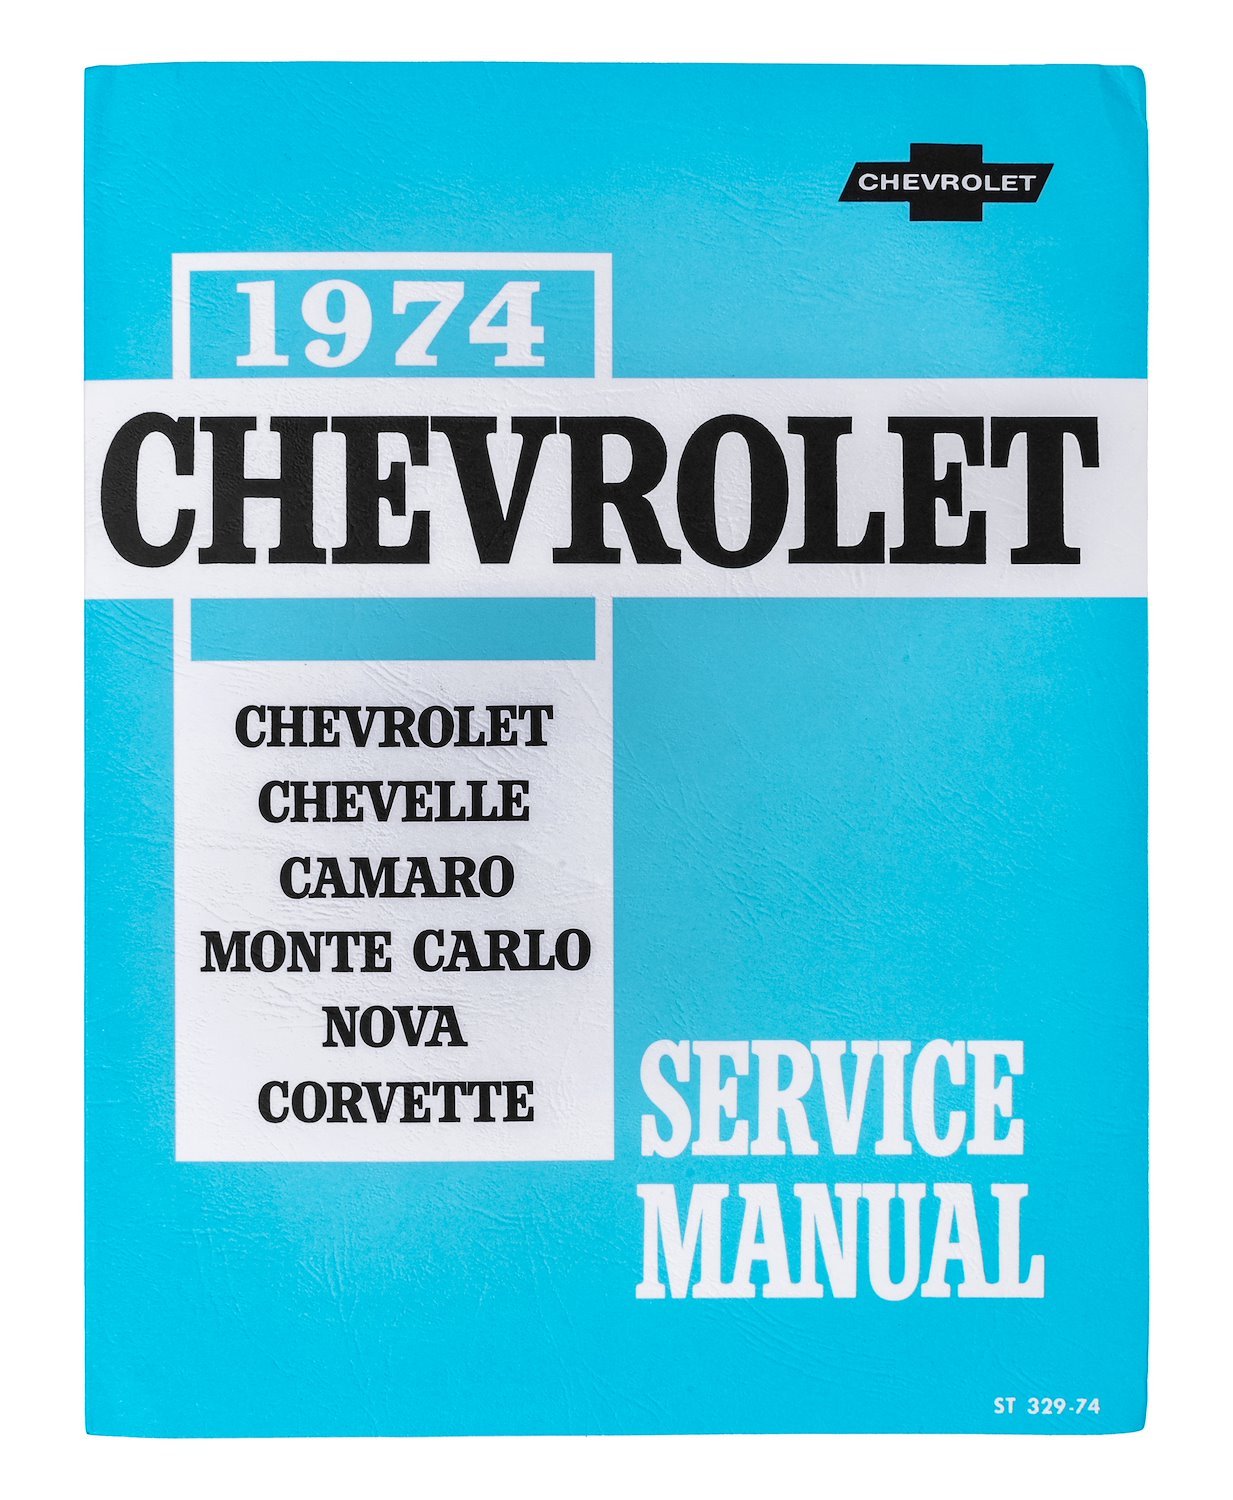 Chassis Service Manual for 1974 Chevrolet, Camaro, Chevelle, Corvette, Monte Carlo, Nova